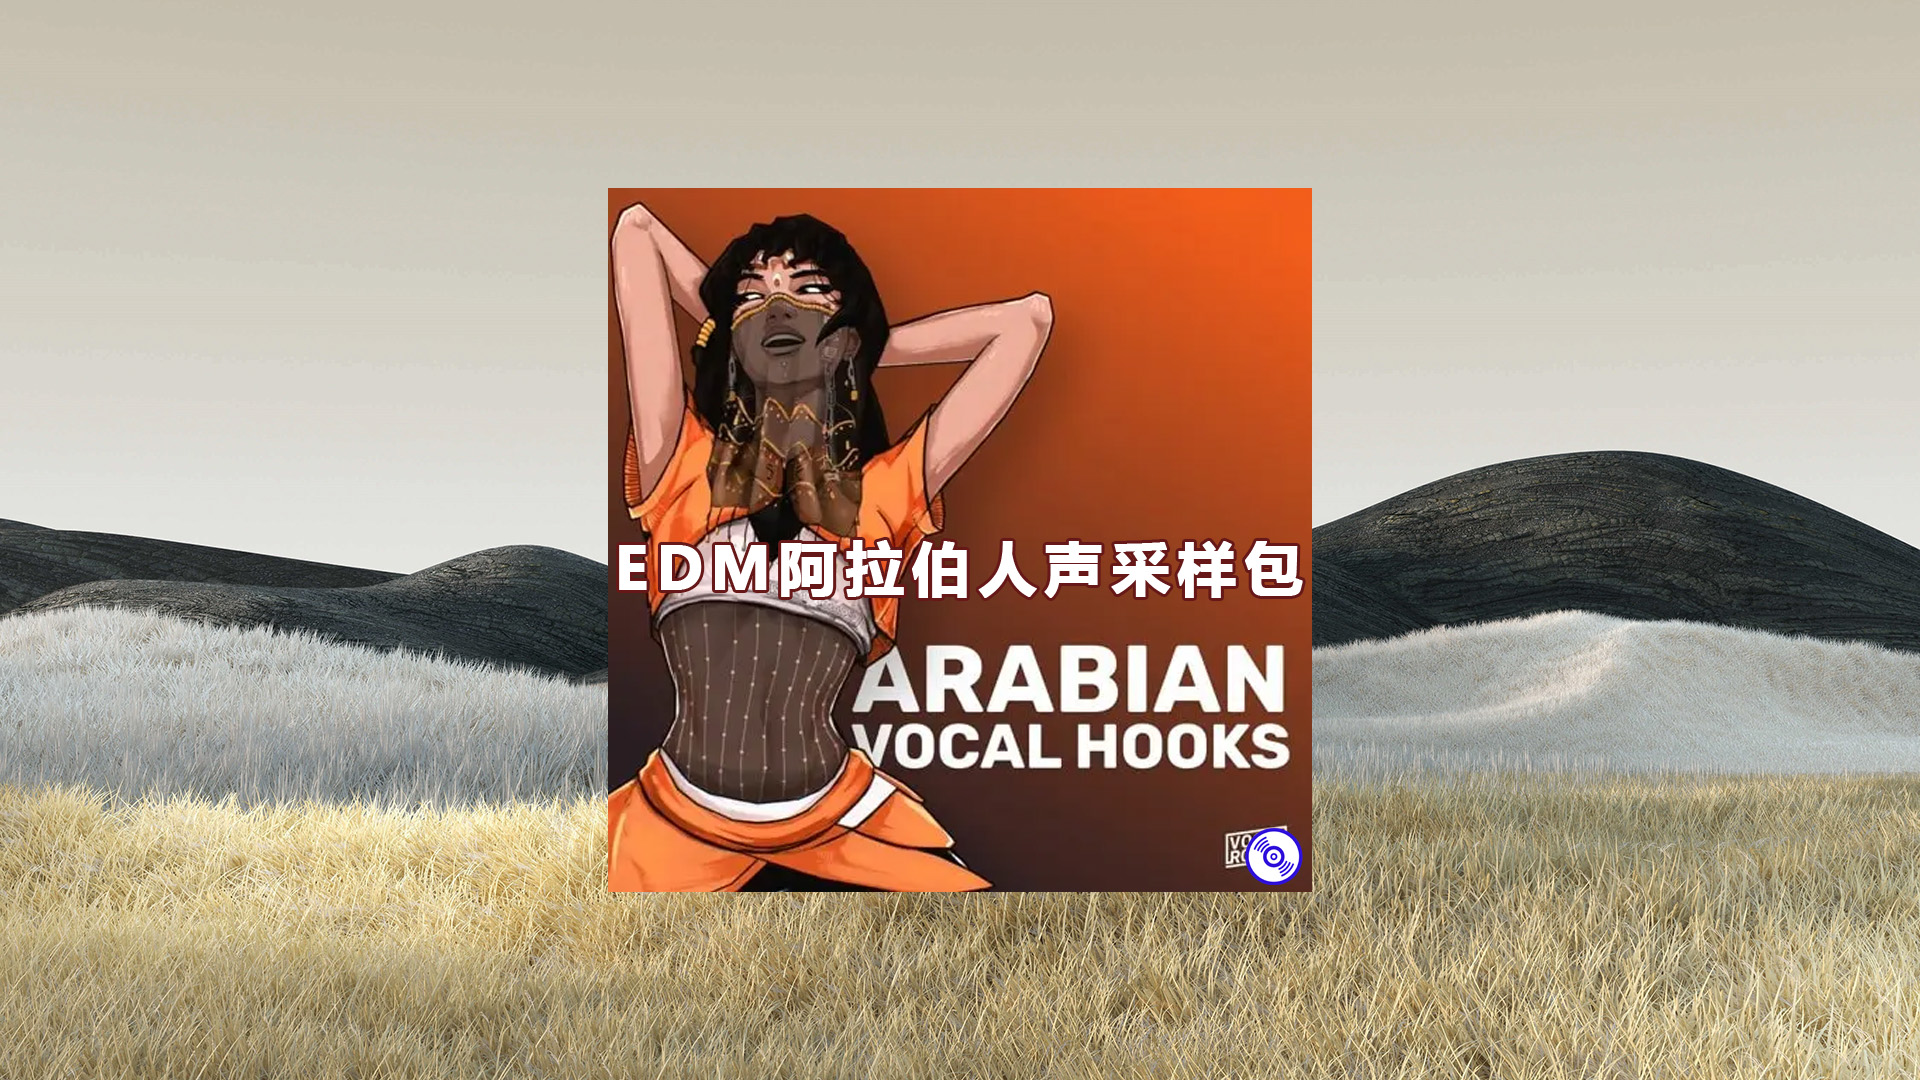 【EDM阿拉伯人声采样包】Arabian Vocal Hooks